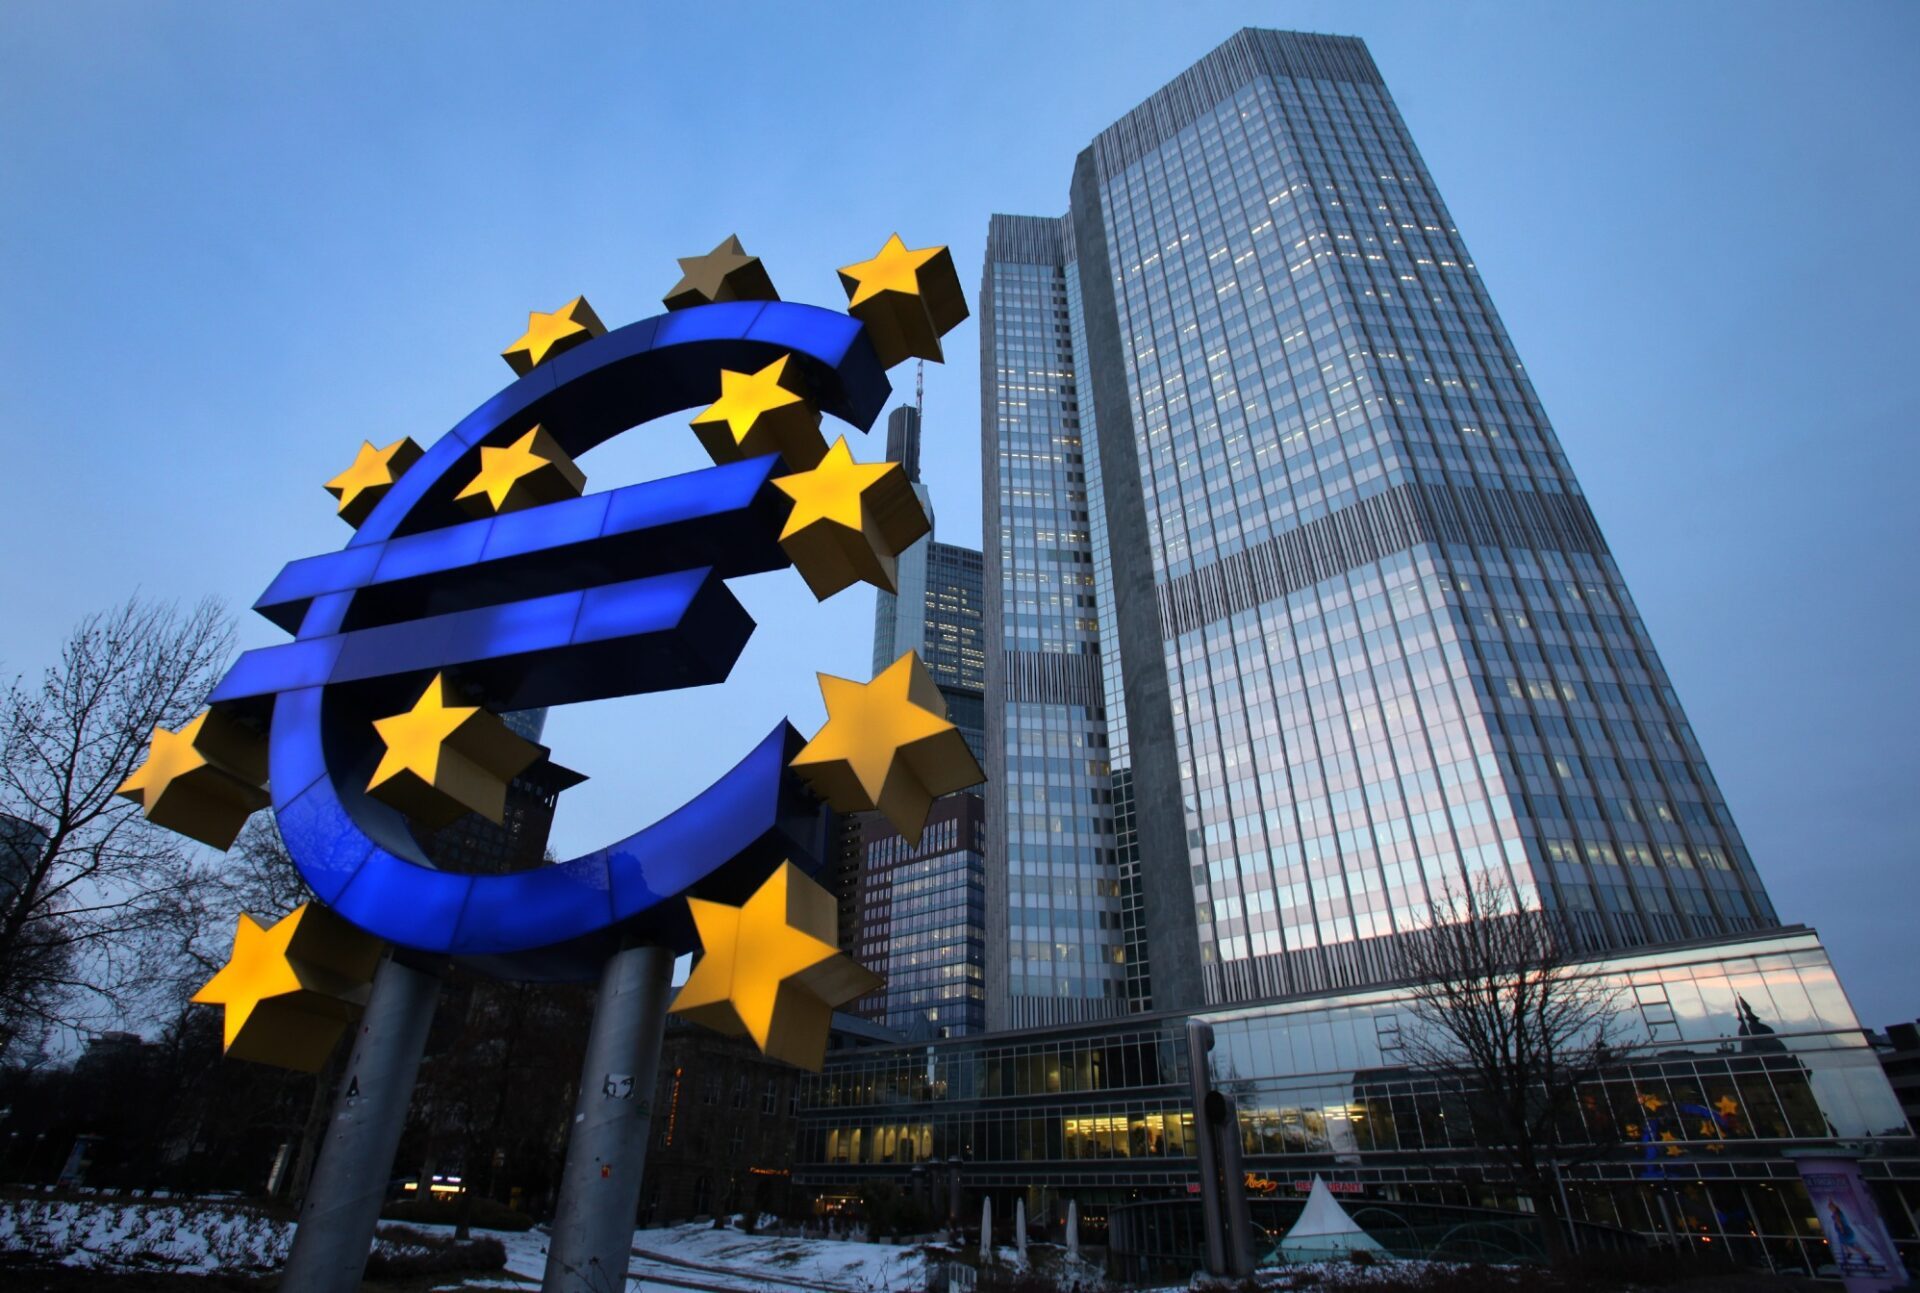 Nhìn lại Tuần 14: Việc châu Âu giảm lãi suất vào giữa năm trở nên khả thi hơn